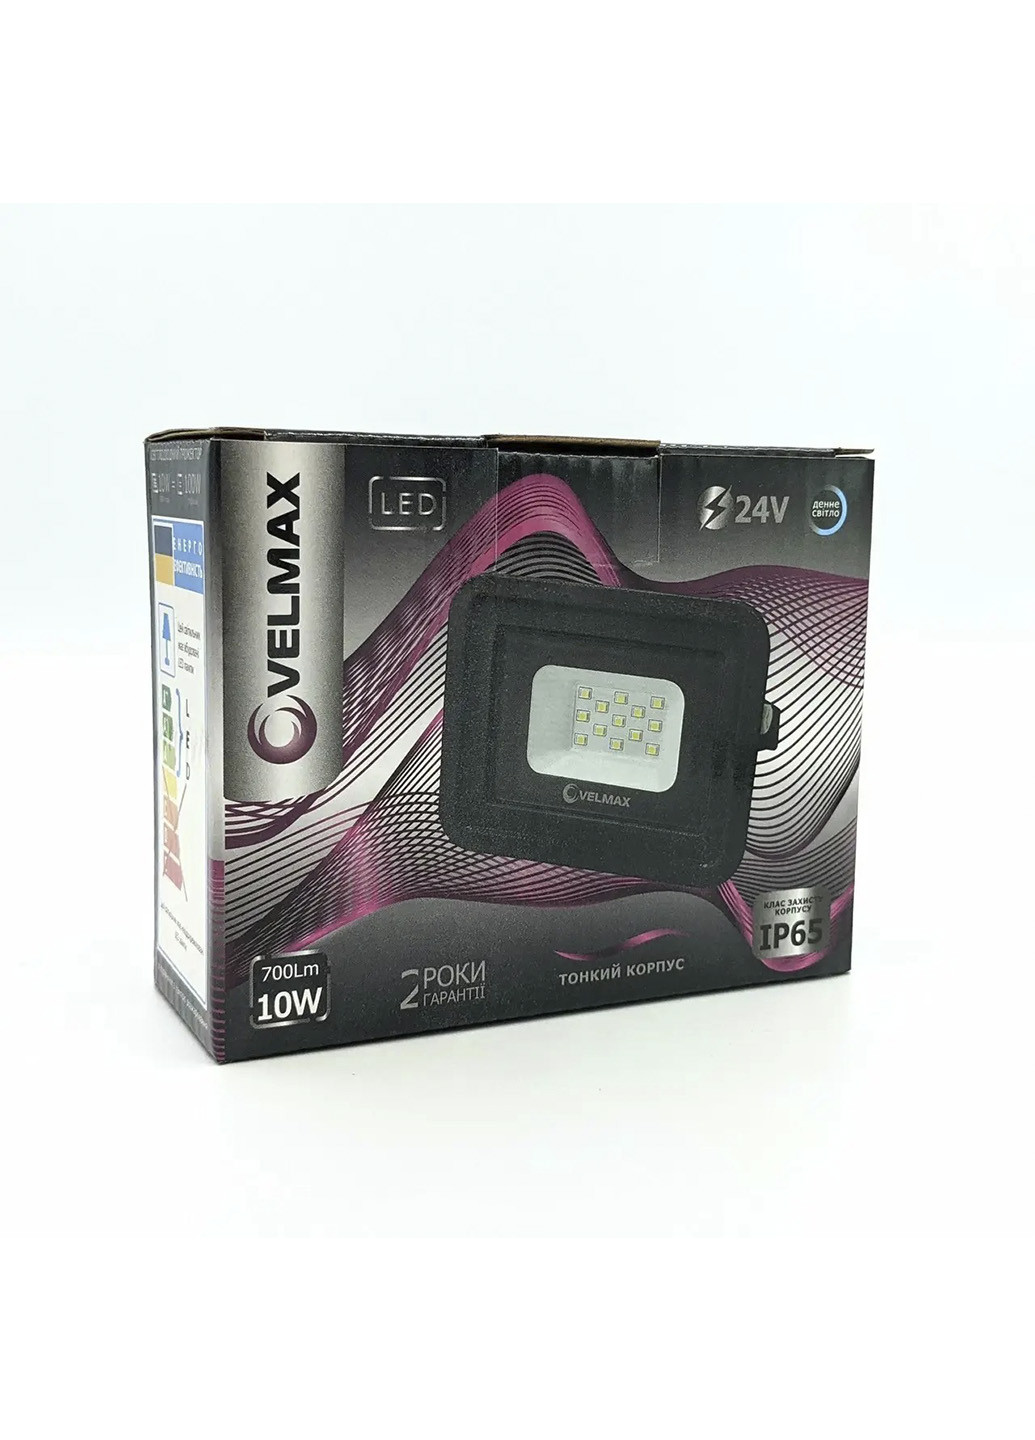 Прожектор світлодіодний Velmax 26-13-10 10W 6500K Videx чорний